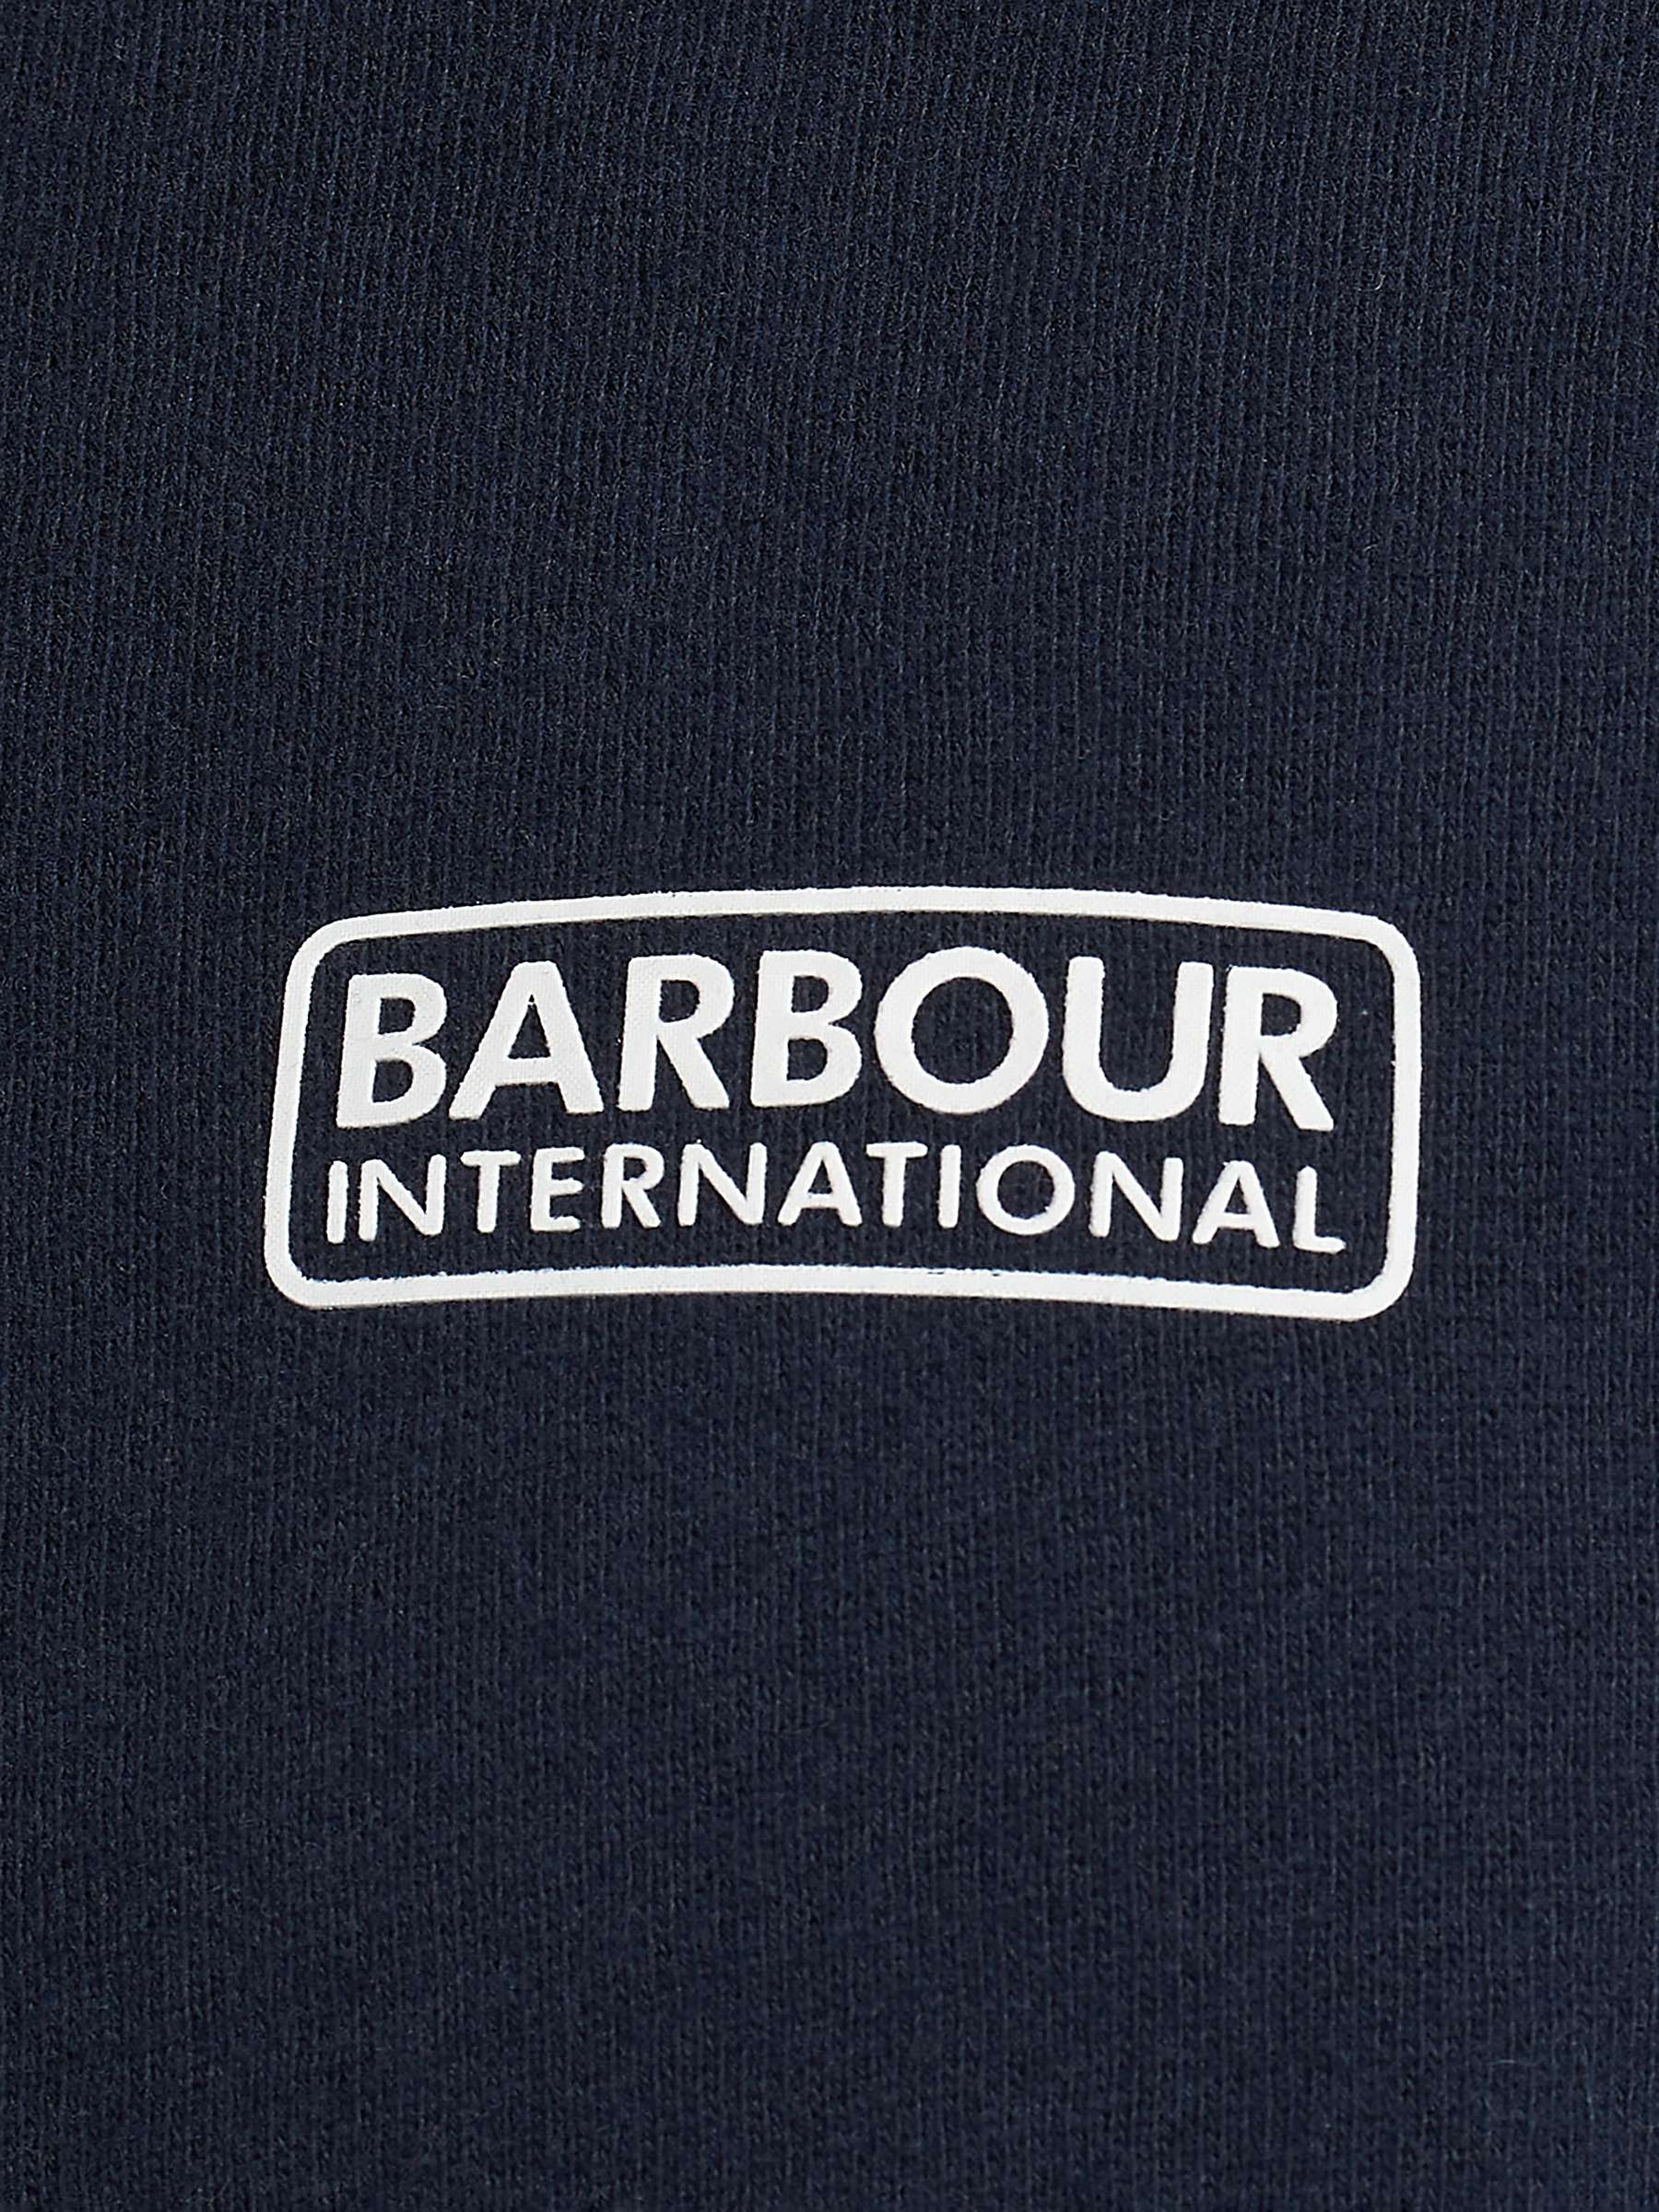 Buy Barbour International Full Zip Hoodie Online at johnlewis.com